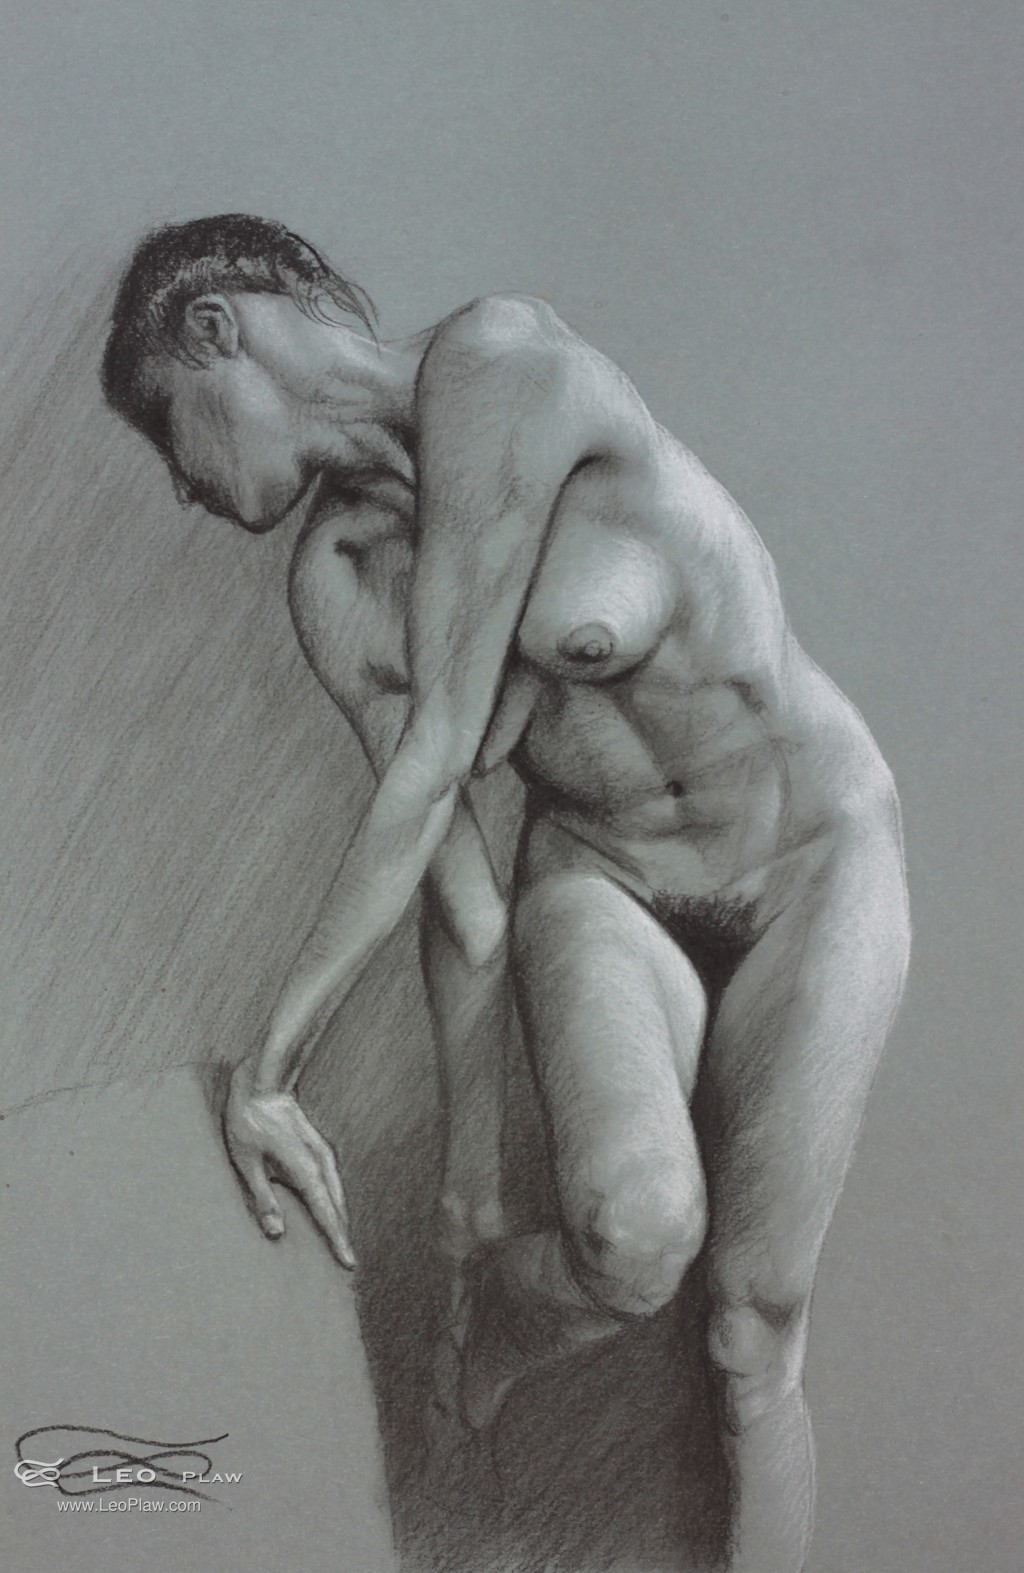 "Figure 21", Leo Plaw, 24 x 34cm, pastel pencil on paper